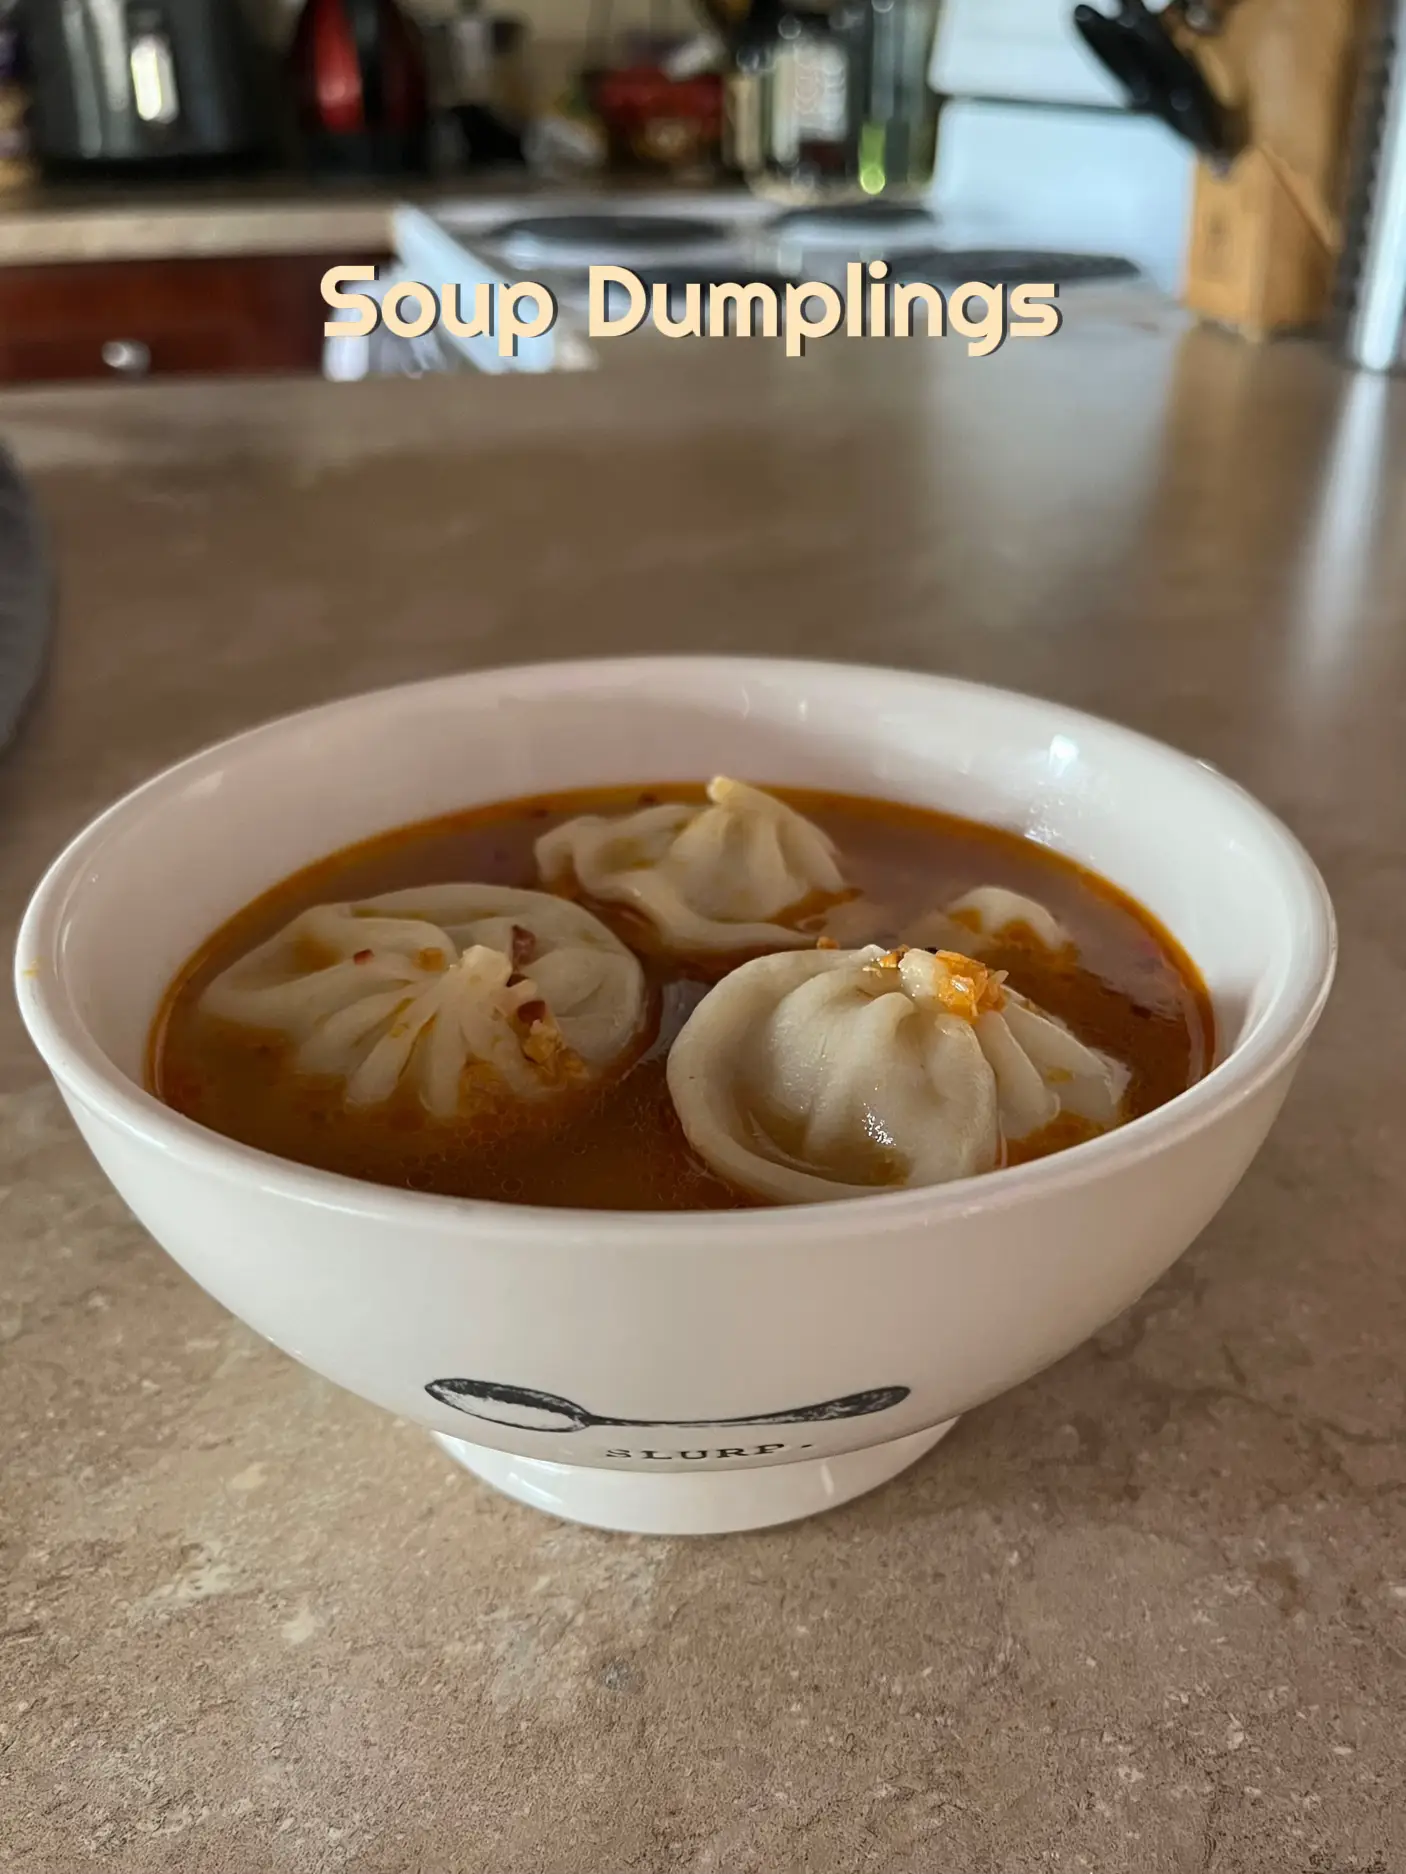 Trader Joe's Steamed Chicken Soup Dumplings 